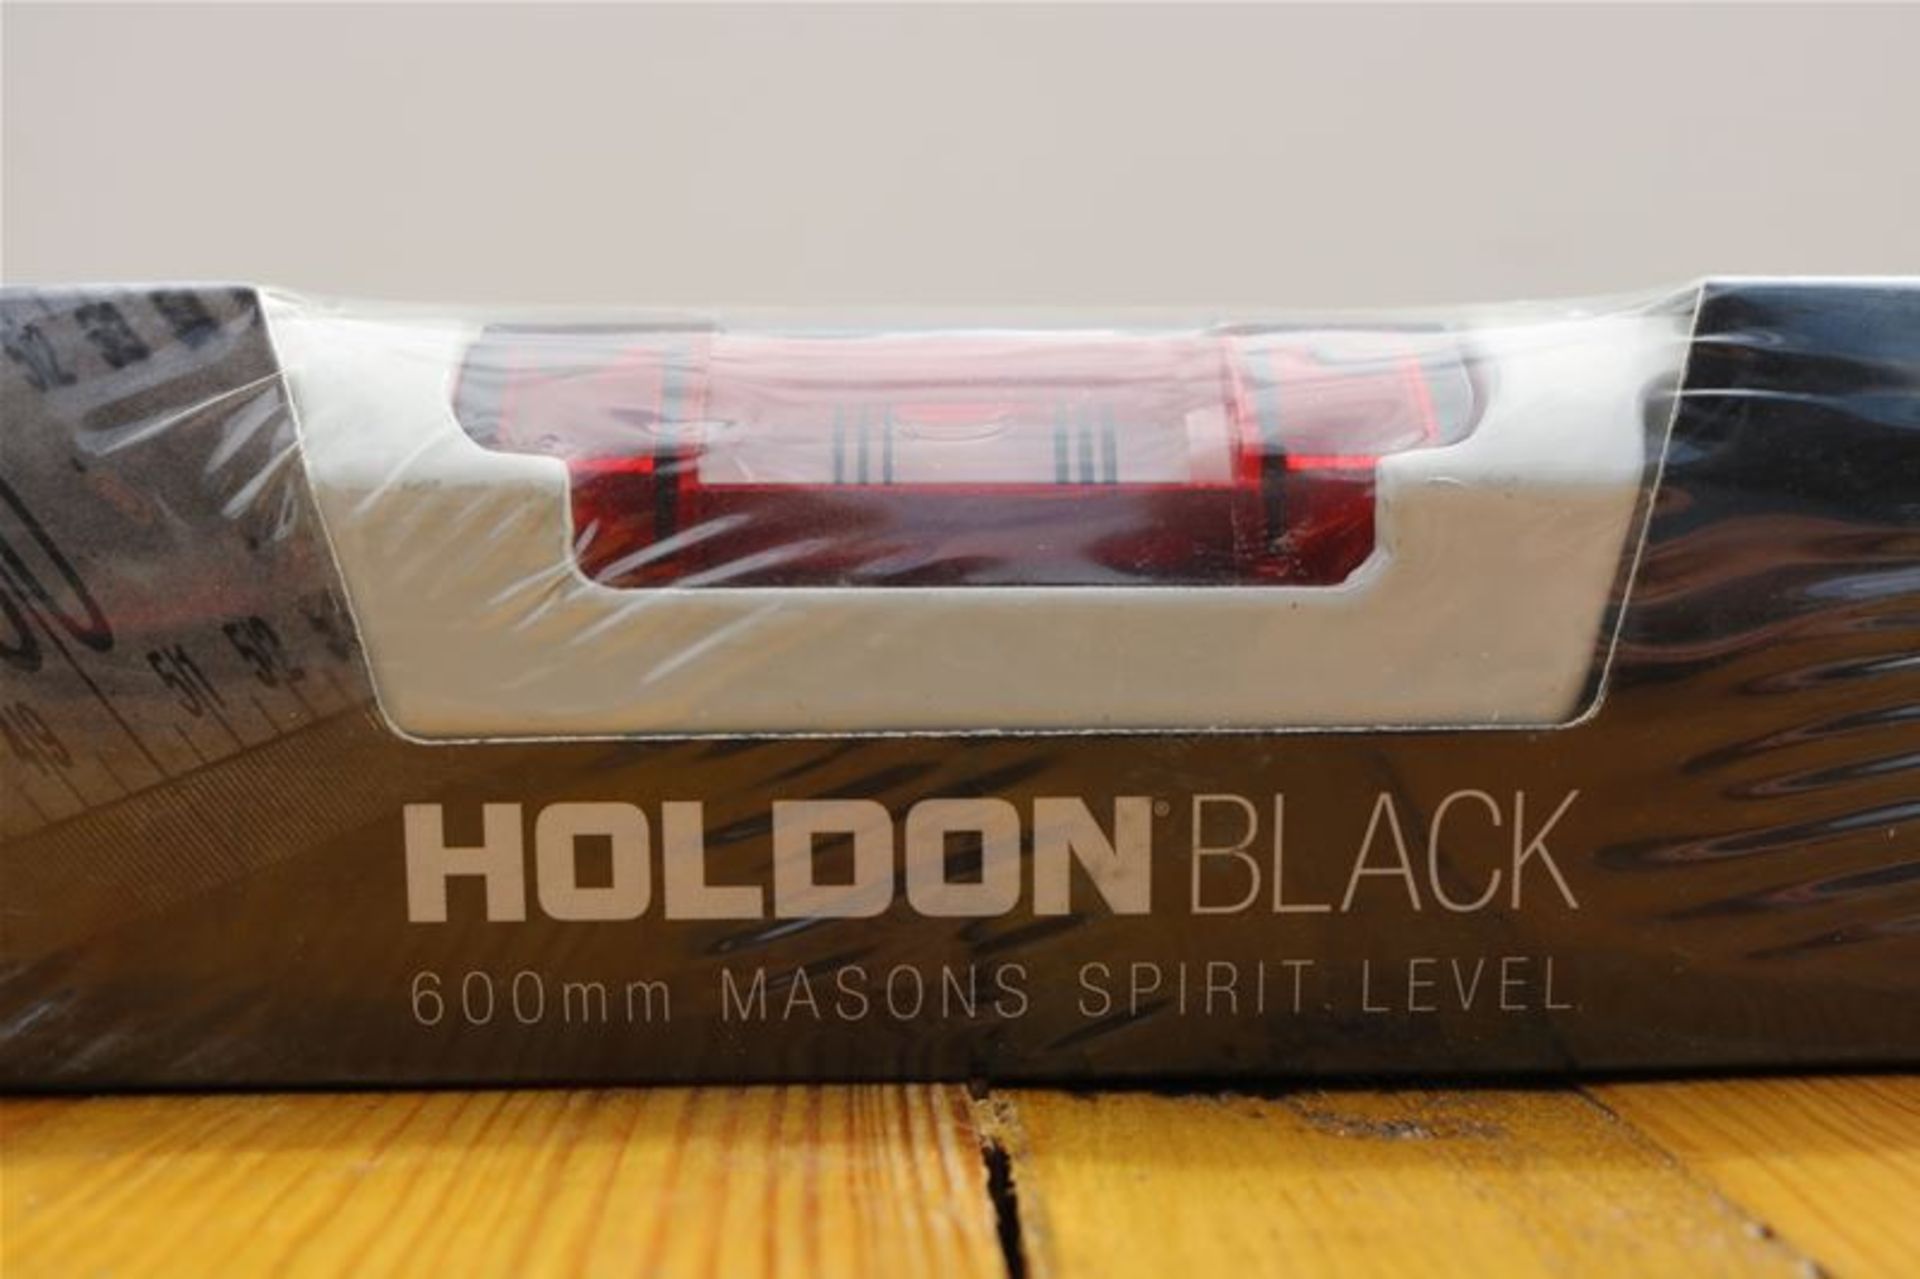 10 x HOLDON BLACK 600mm Masons Spirit Level - Image 2 of 2